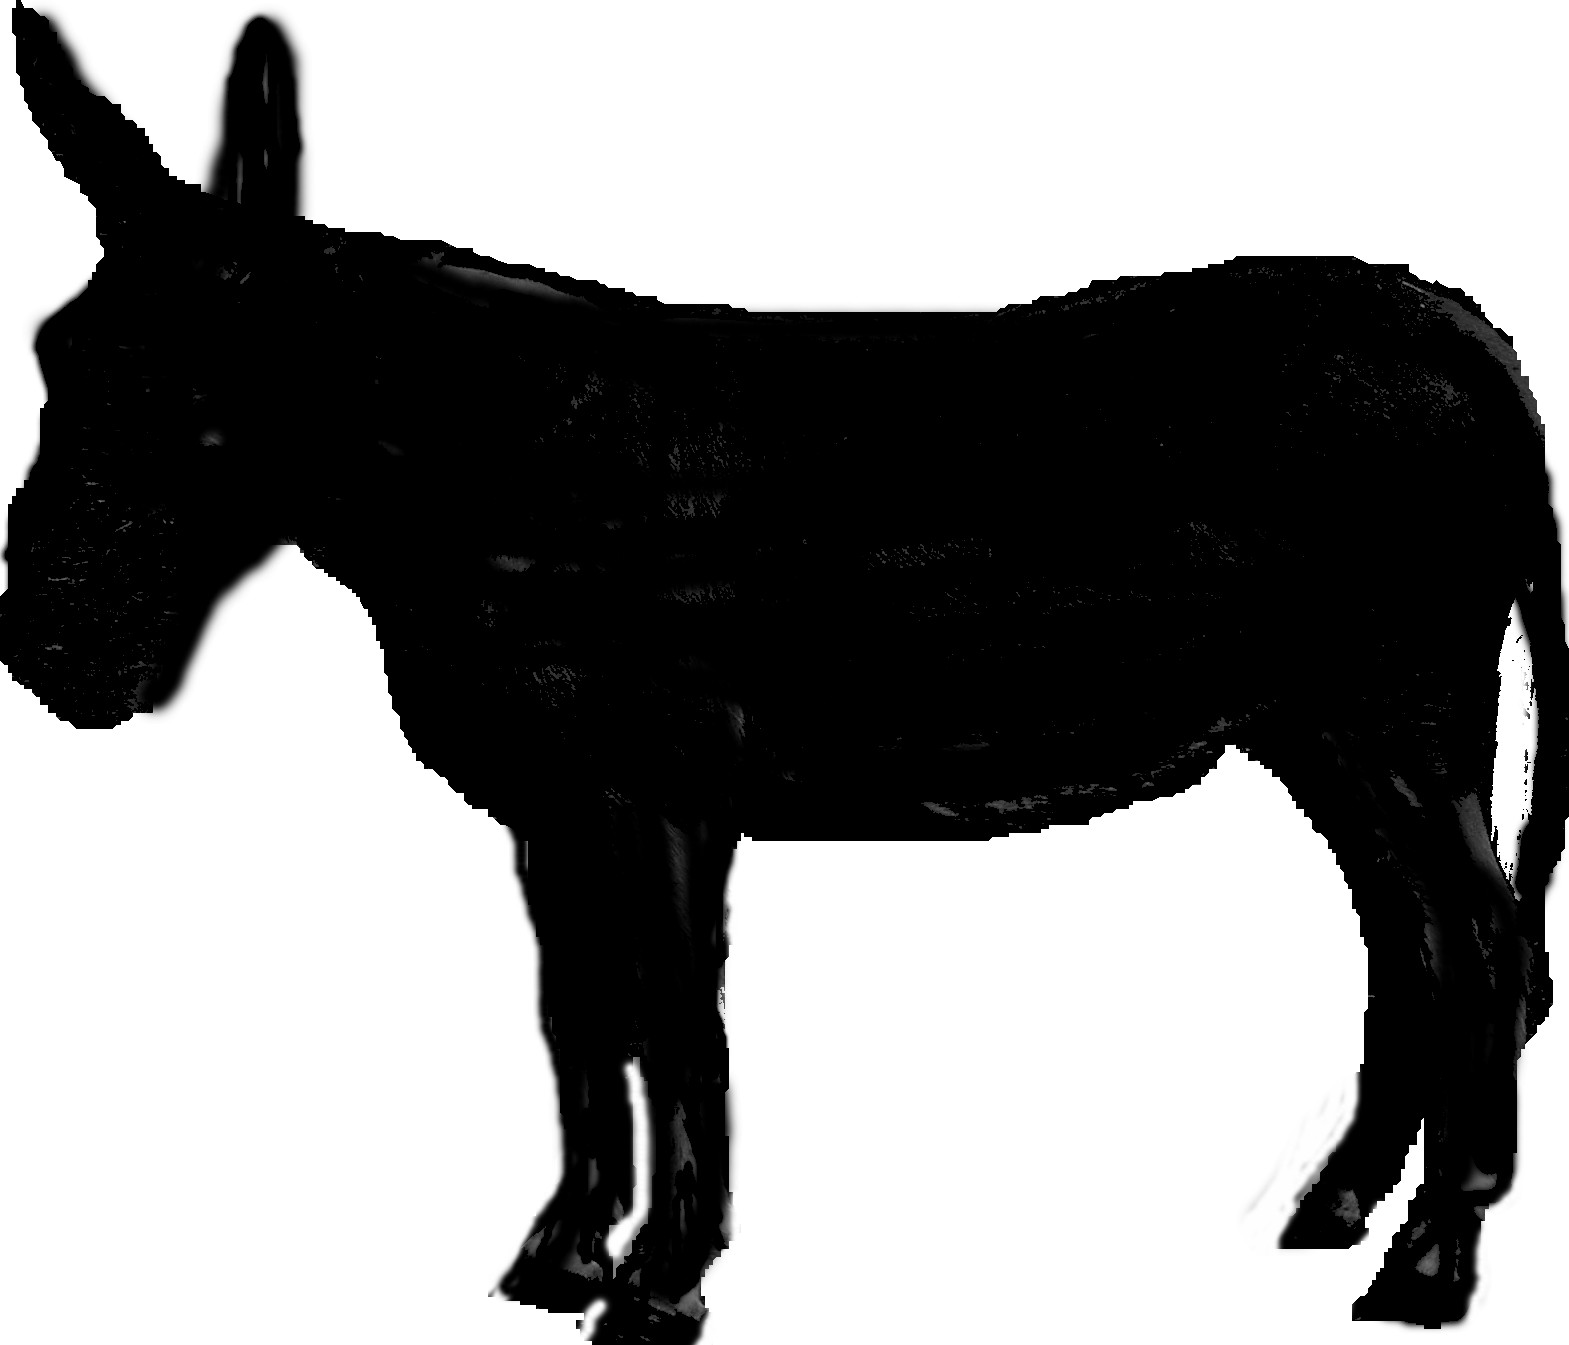 shrek donkey silhouette